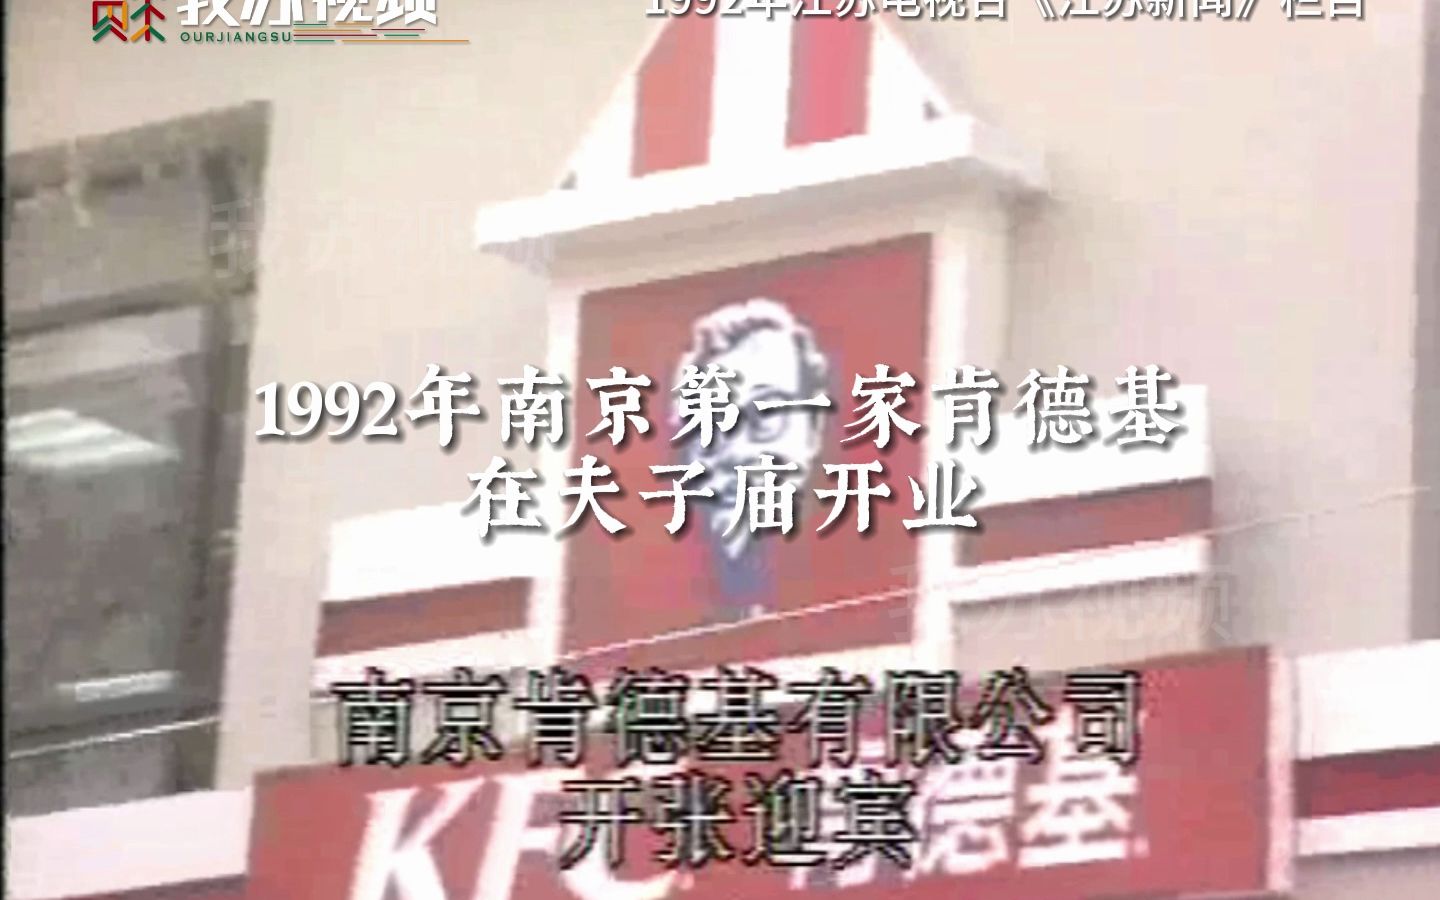 1992年南京第一家肯德基在夫子庙开业